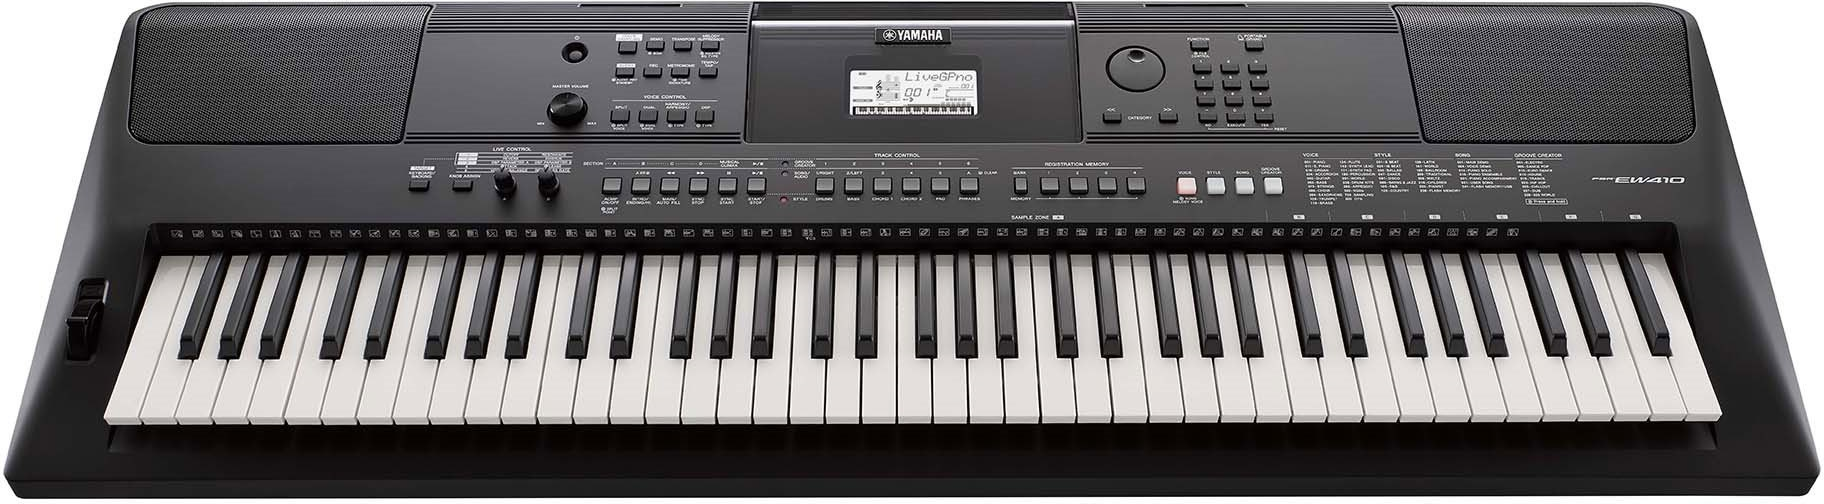 Yamaha Psr-ew410 - Clavier Arrangeur - Main picture